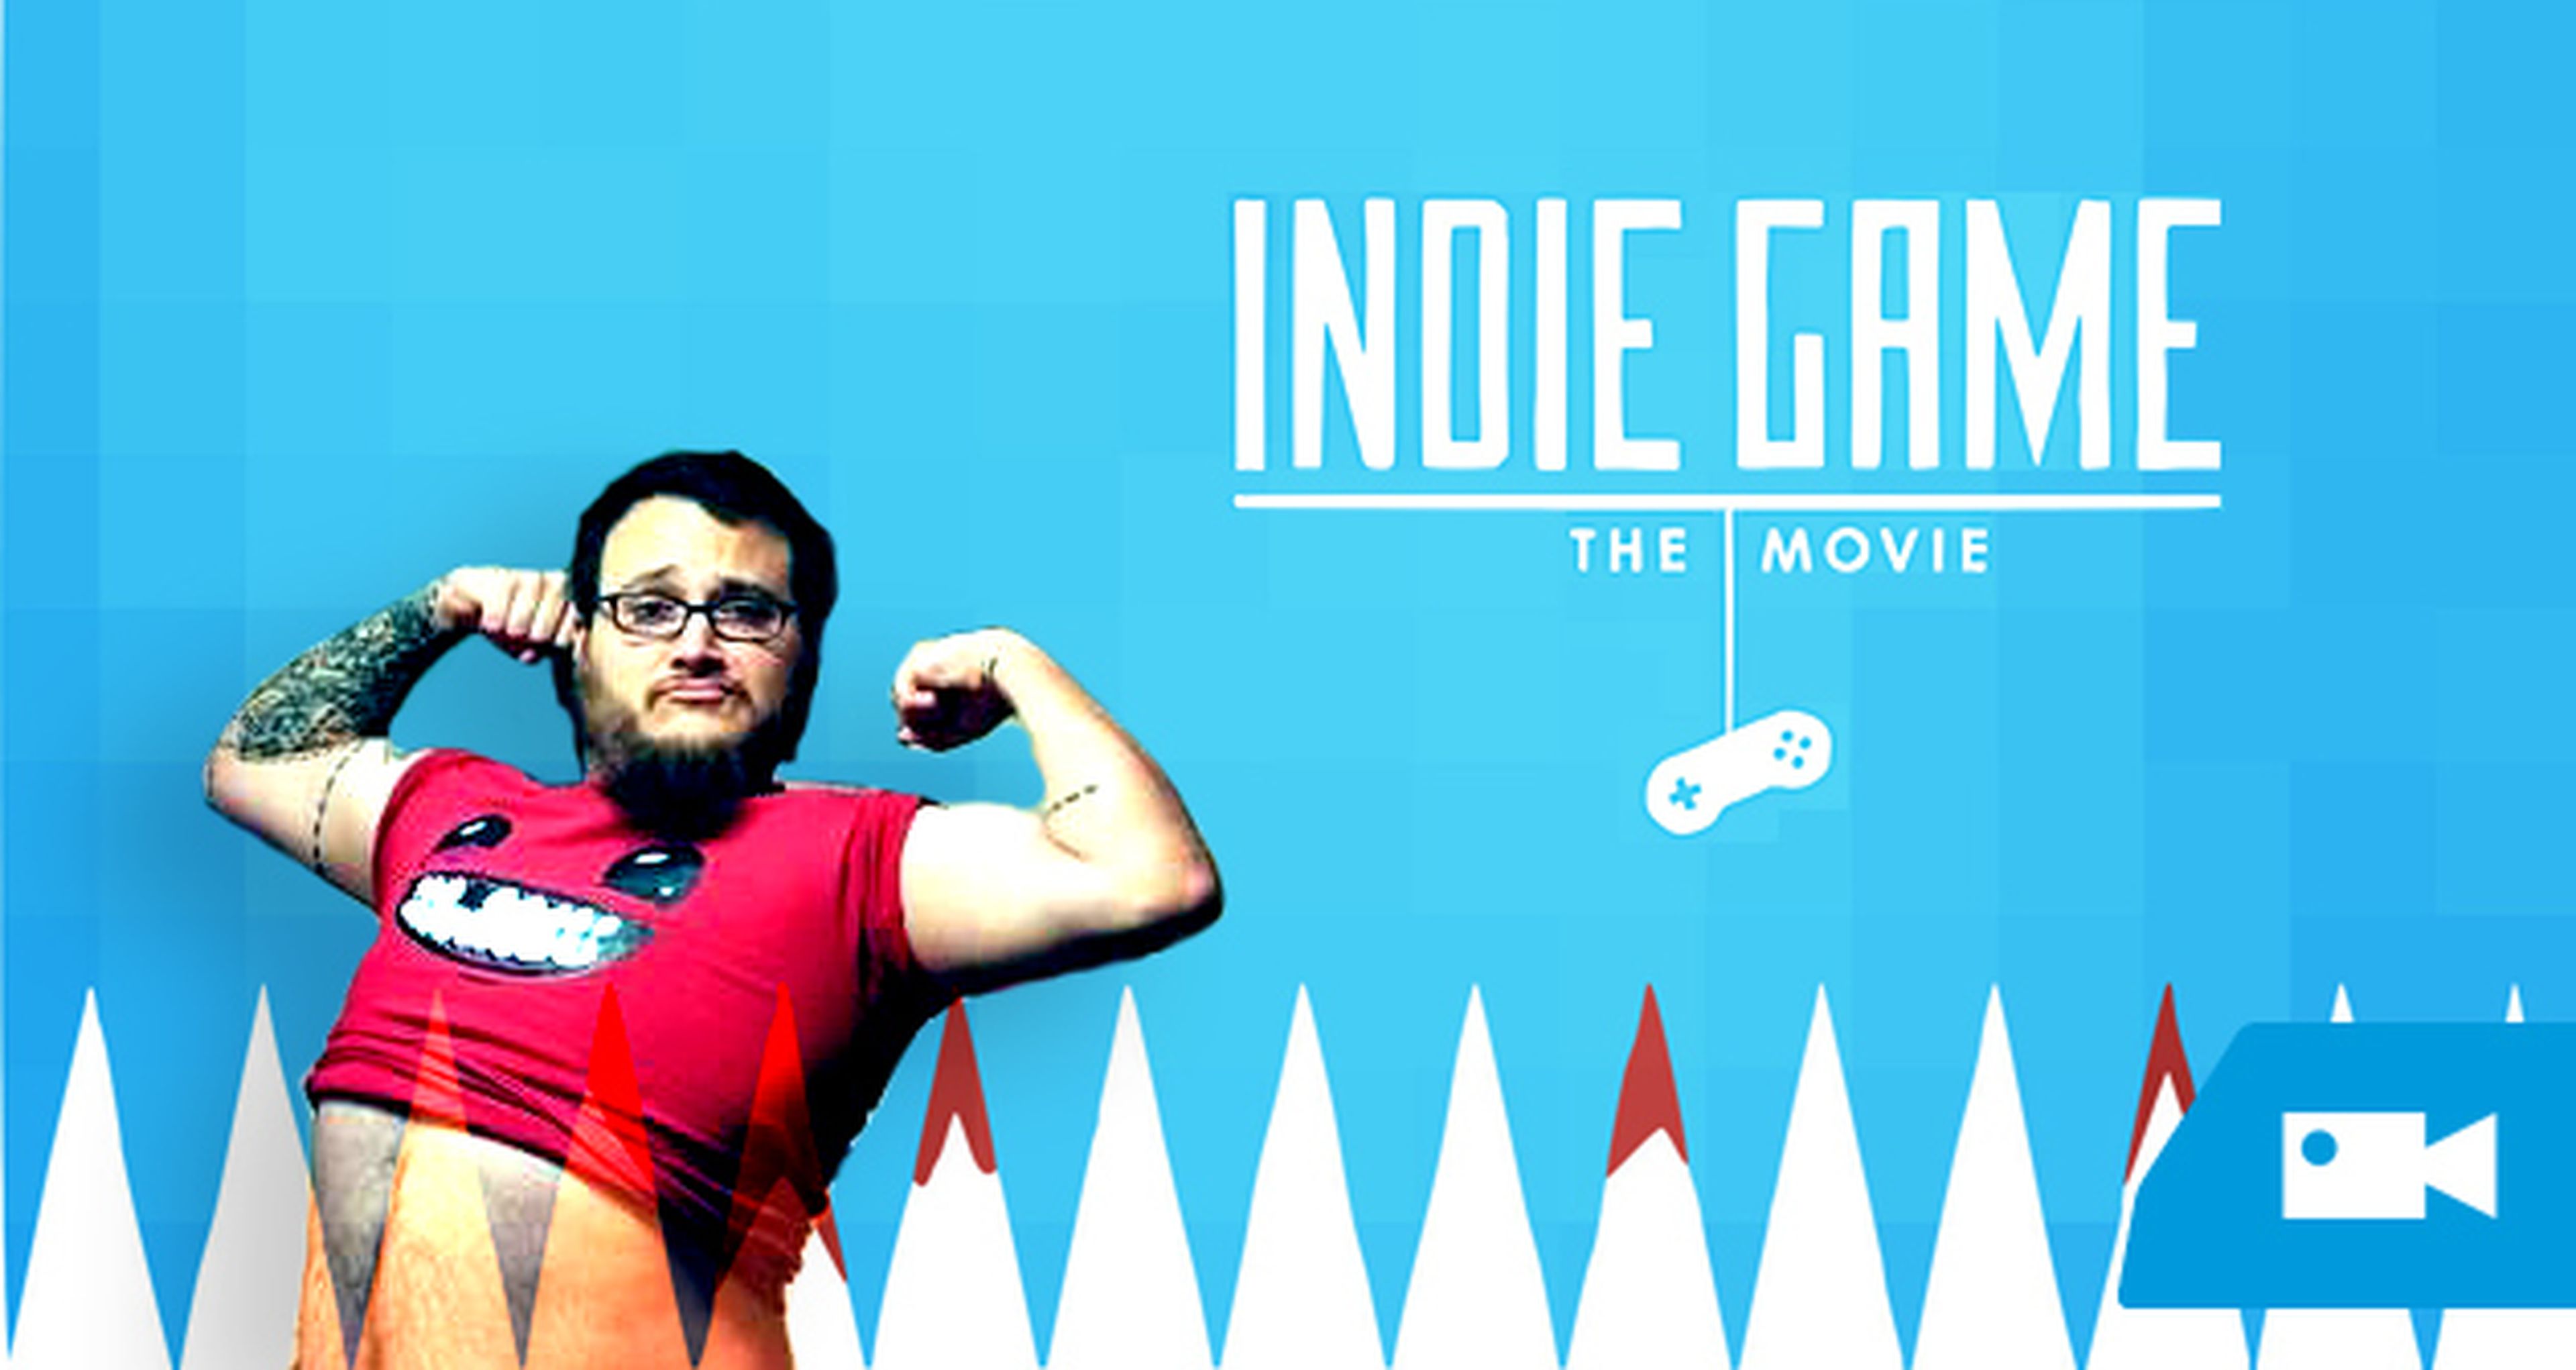 Cine para gamers: Indie Game The Movie